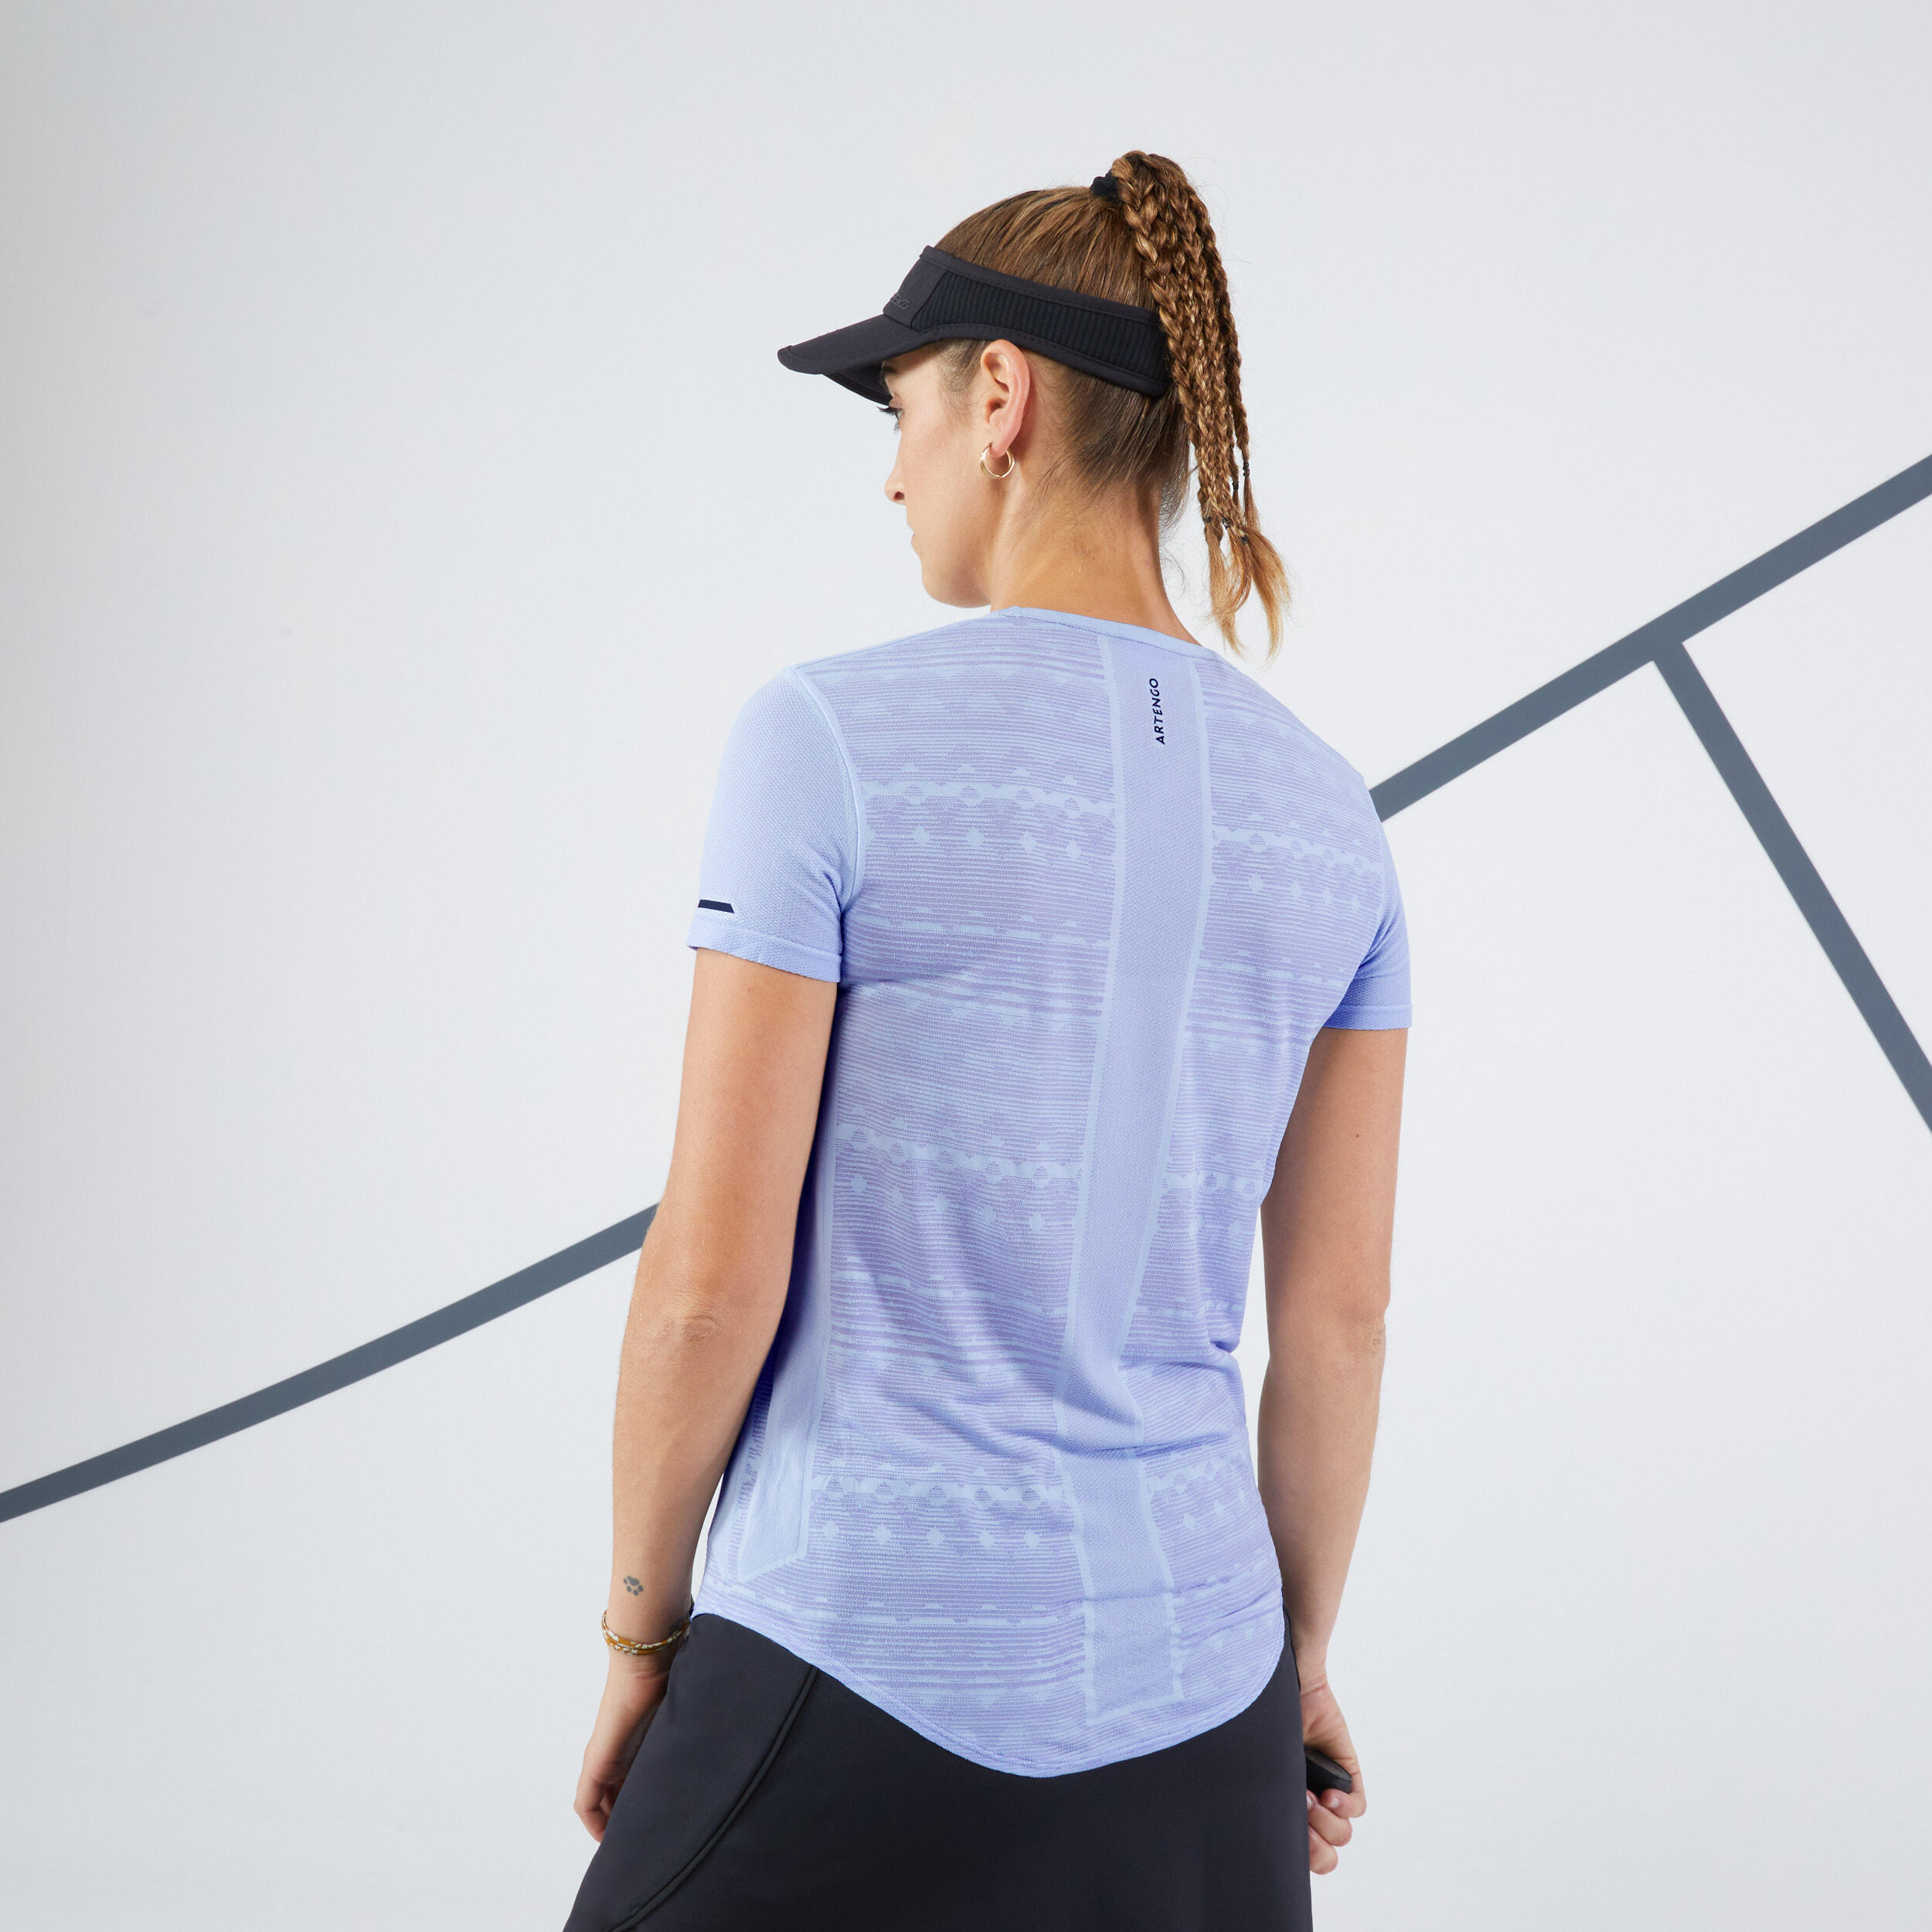 Women's Lightweight Tennis T-Shirt TTS Light - Lavender Blue 4/6